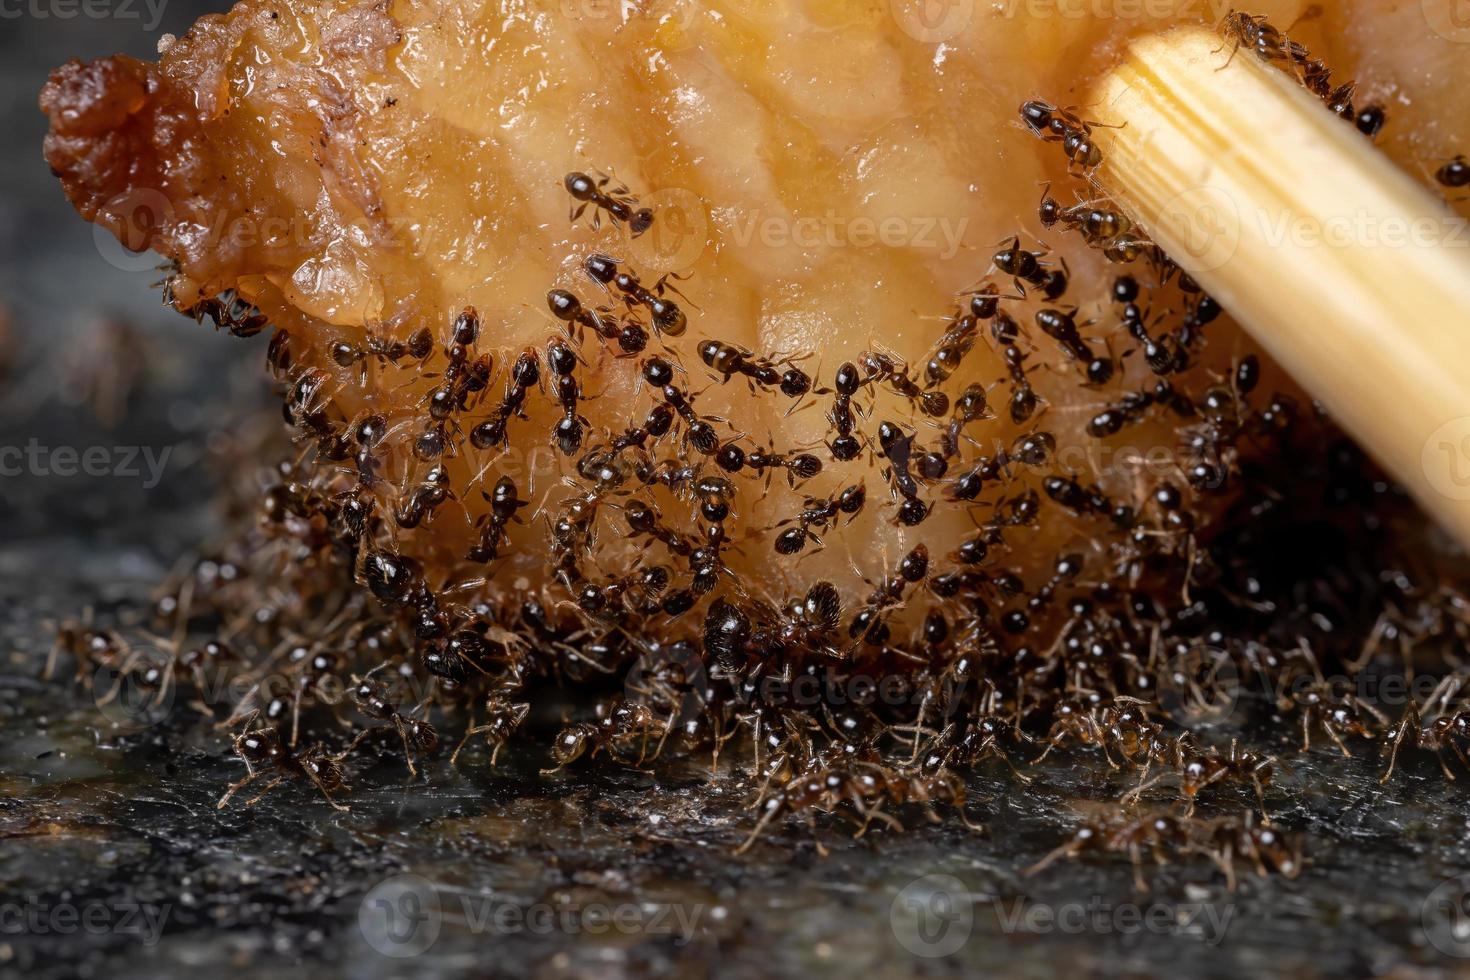 petites fourmis à grosse tête dans la graisse animale photo